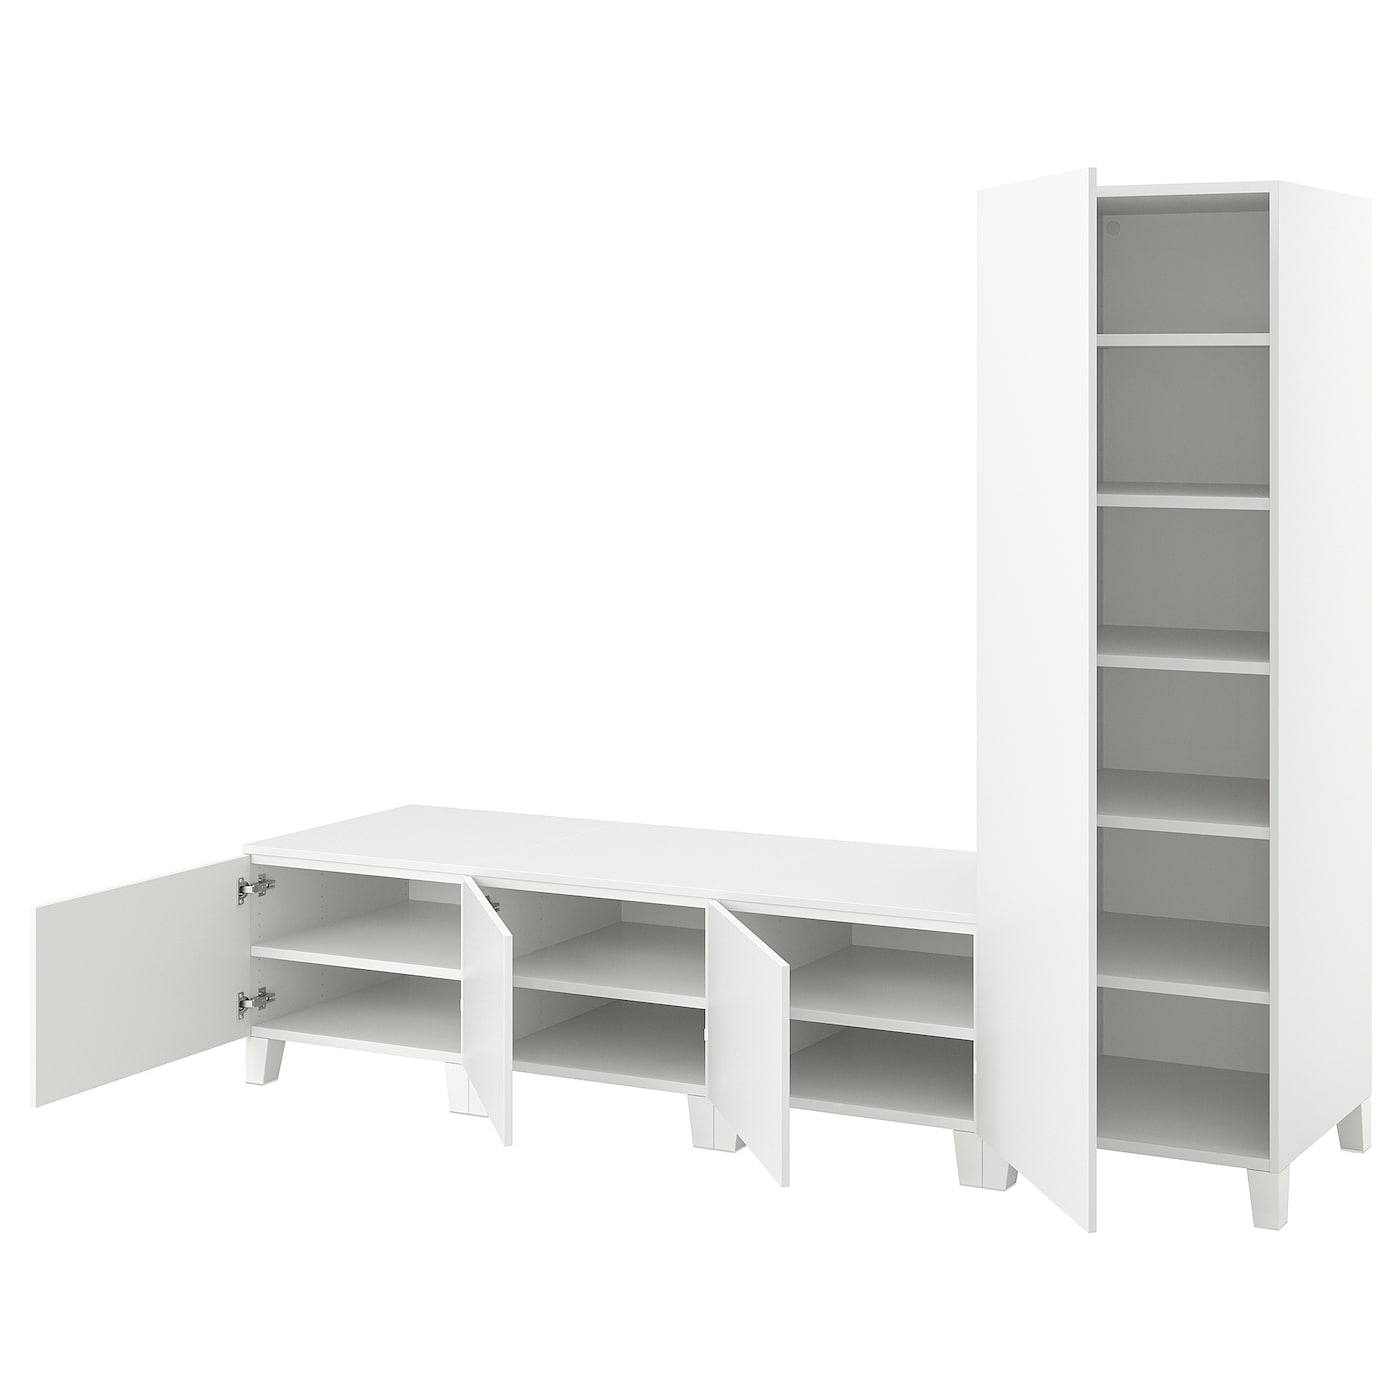 Платяной шкаф - PLATSA/IKEA/ ПЛАТСА ИКЕА,240x57x191 см, белый